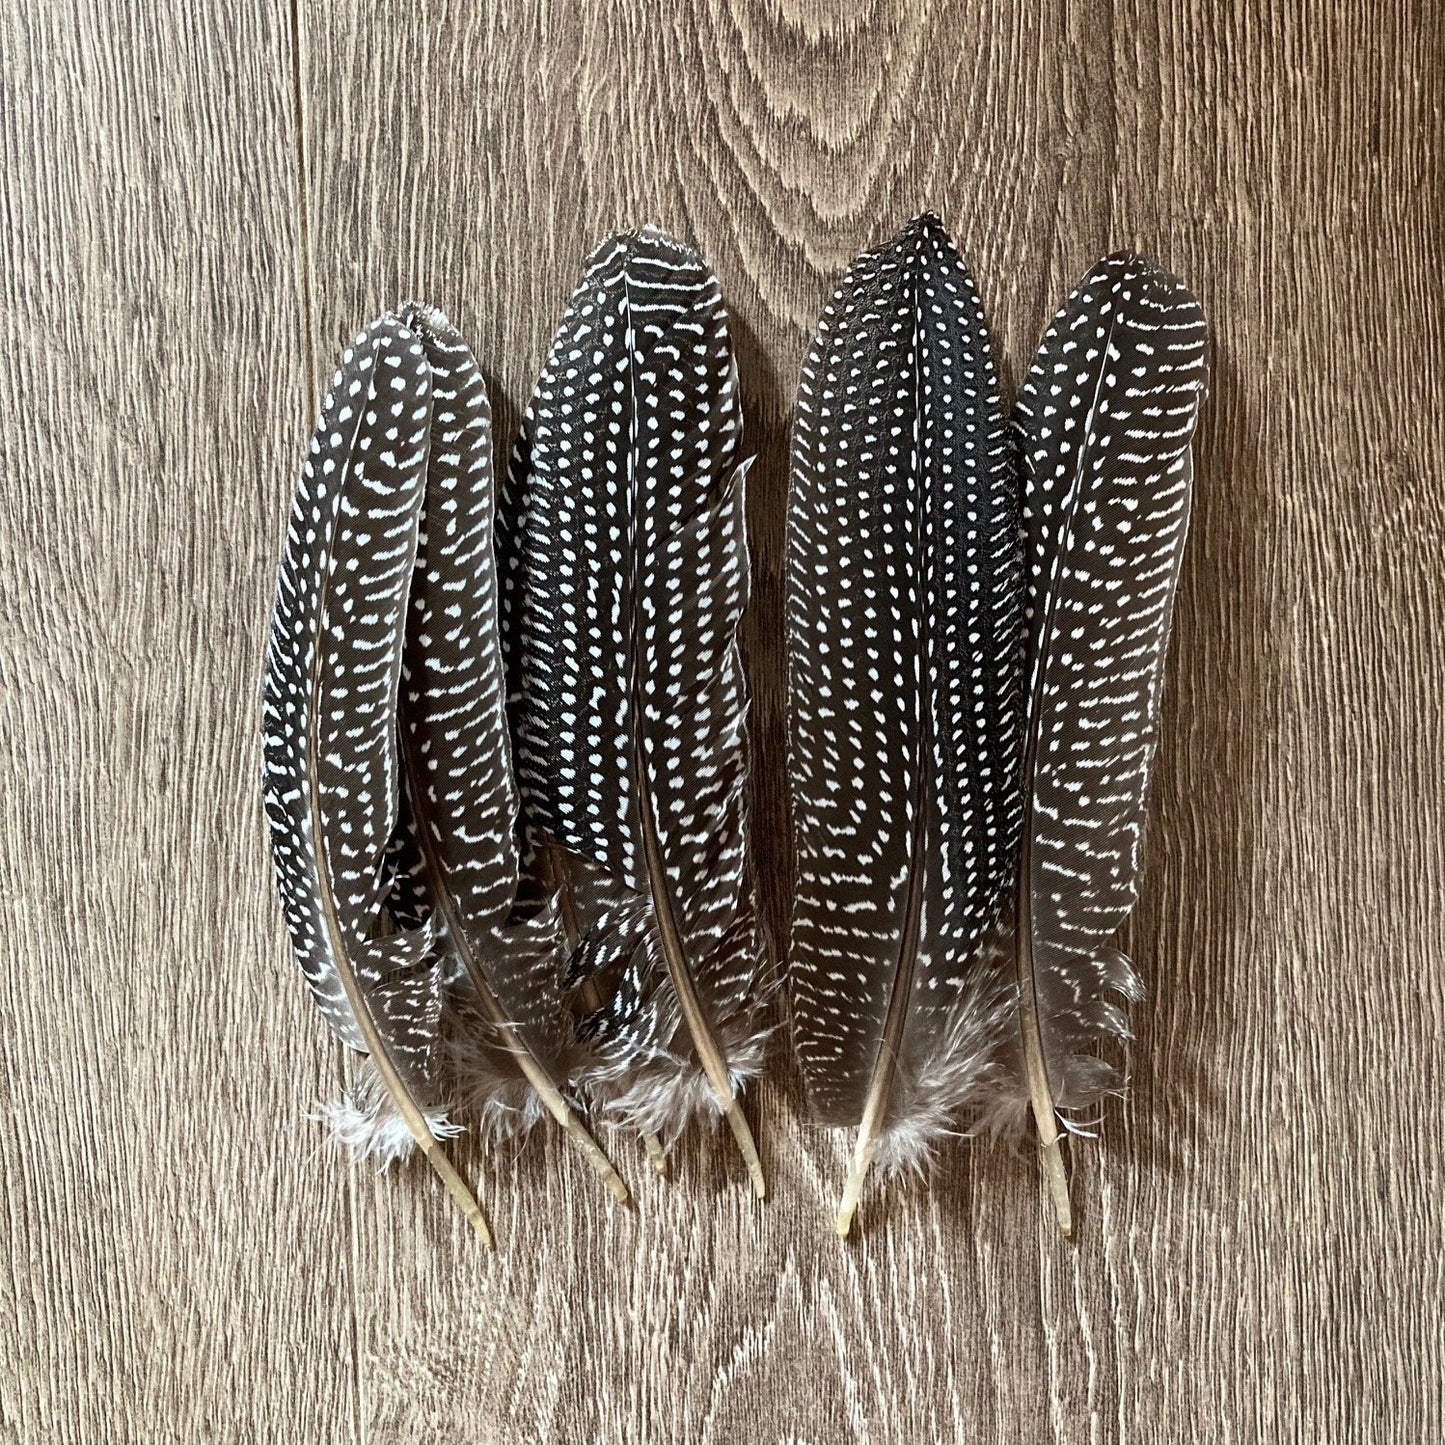 Guinea Fowl Feathers